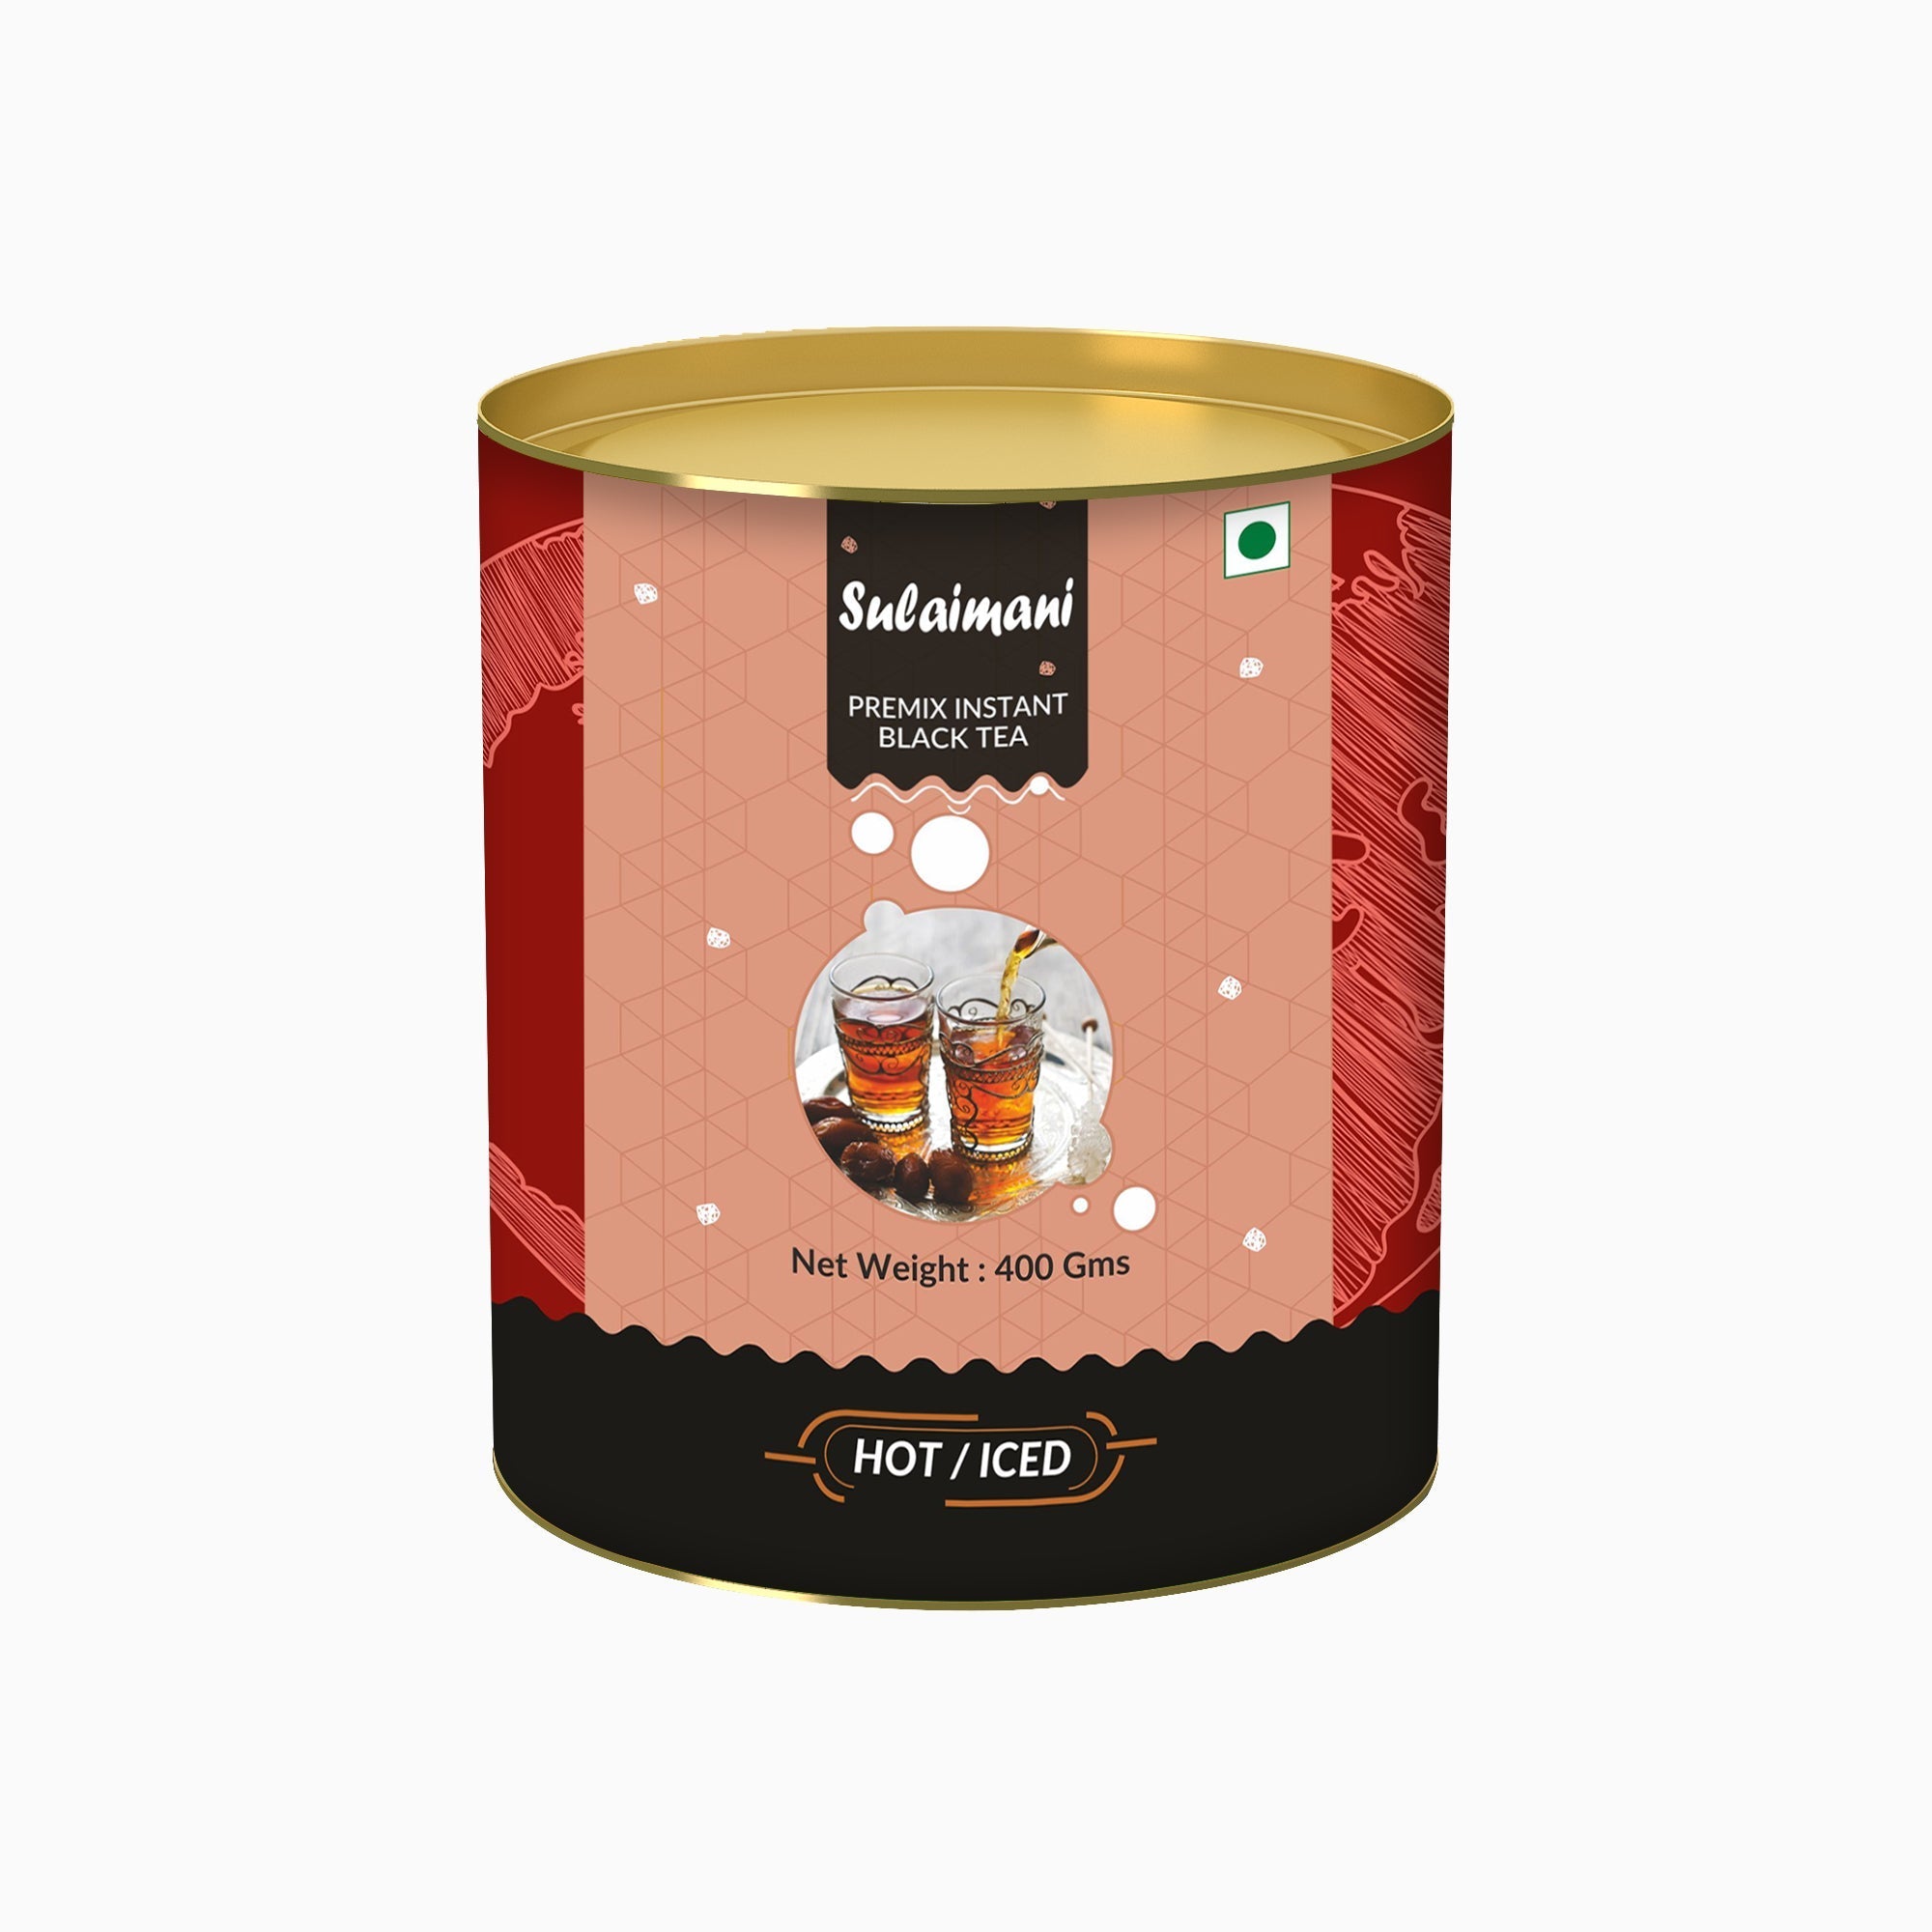 Sulaimani Flavored Instant Black Tea - 800 gms